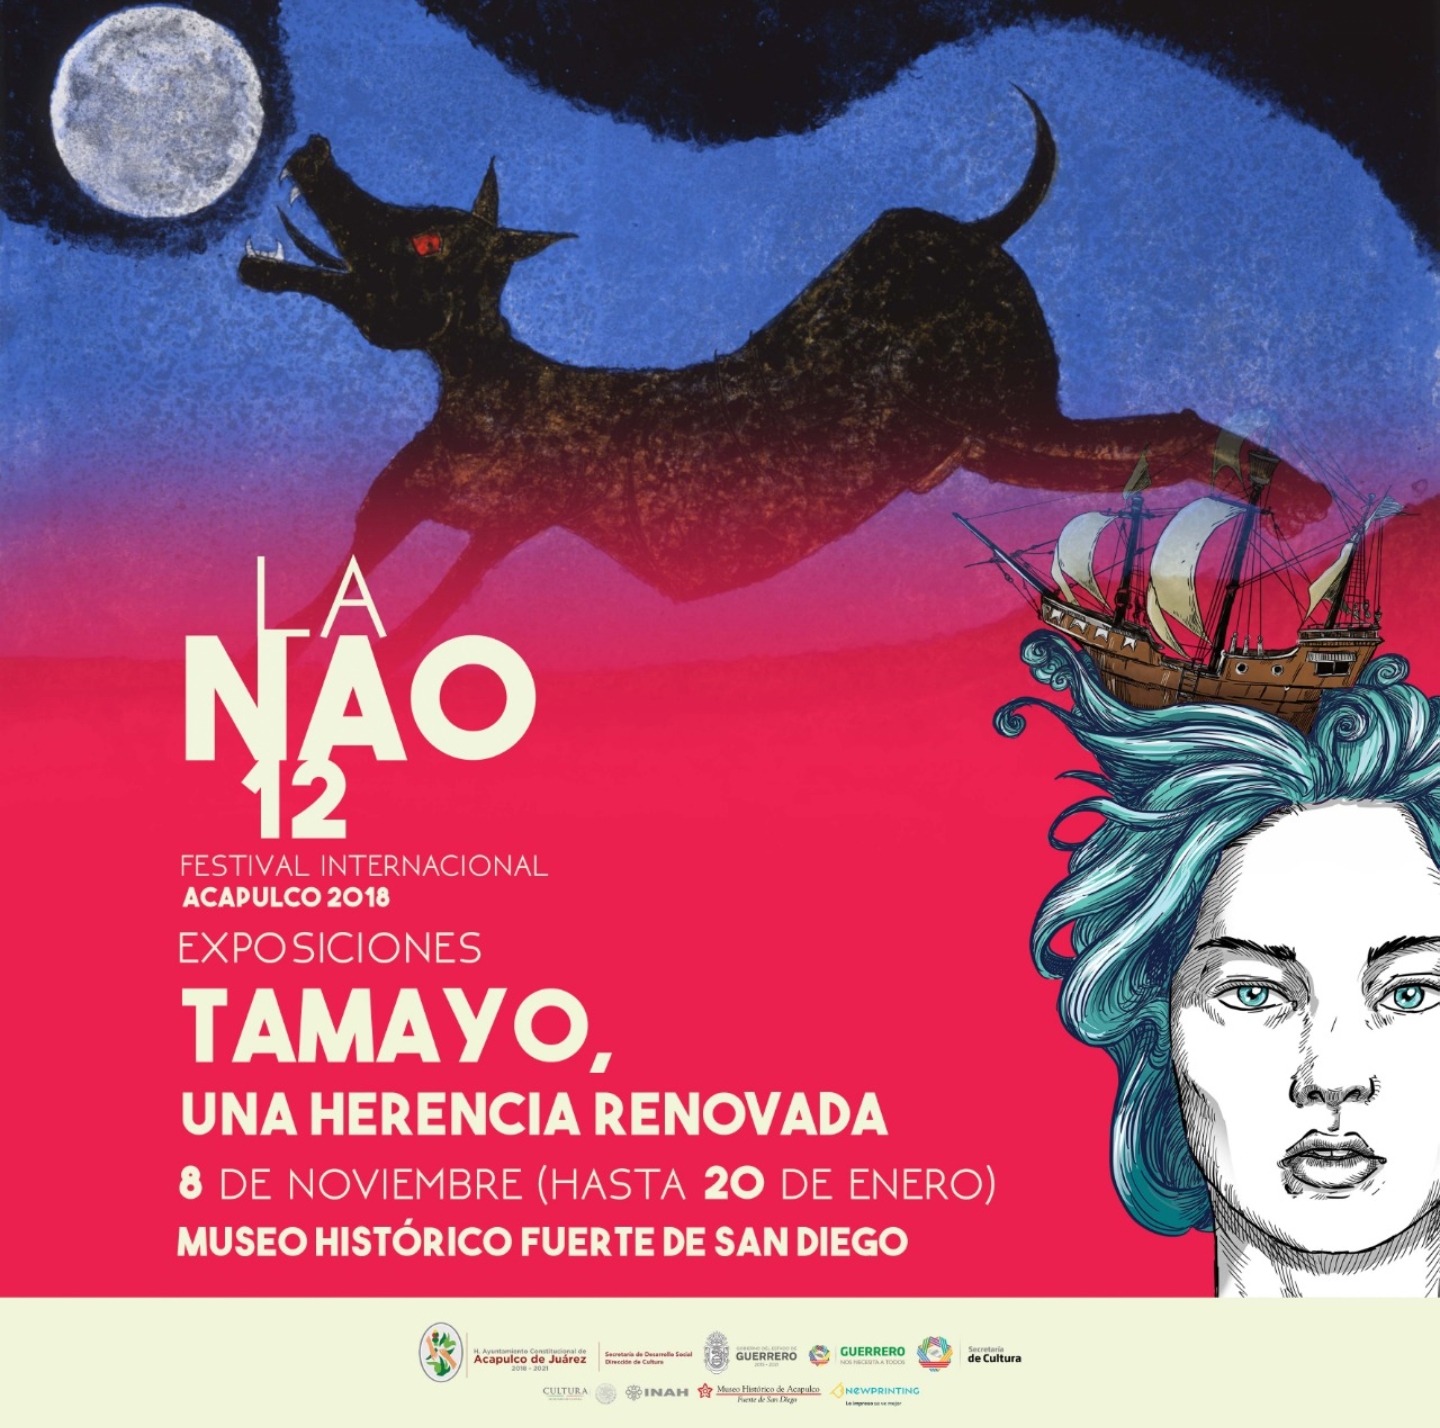 OBRAS DE RUFINO TAMAYO INCLUIDAS EN EL 12 FESTIVAL DE LA NAO ACAPULCO 2018